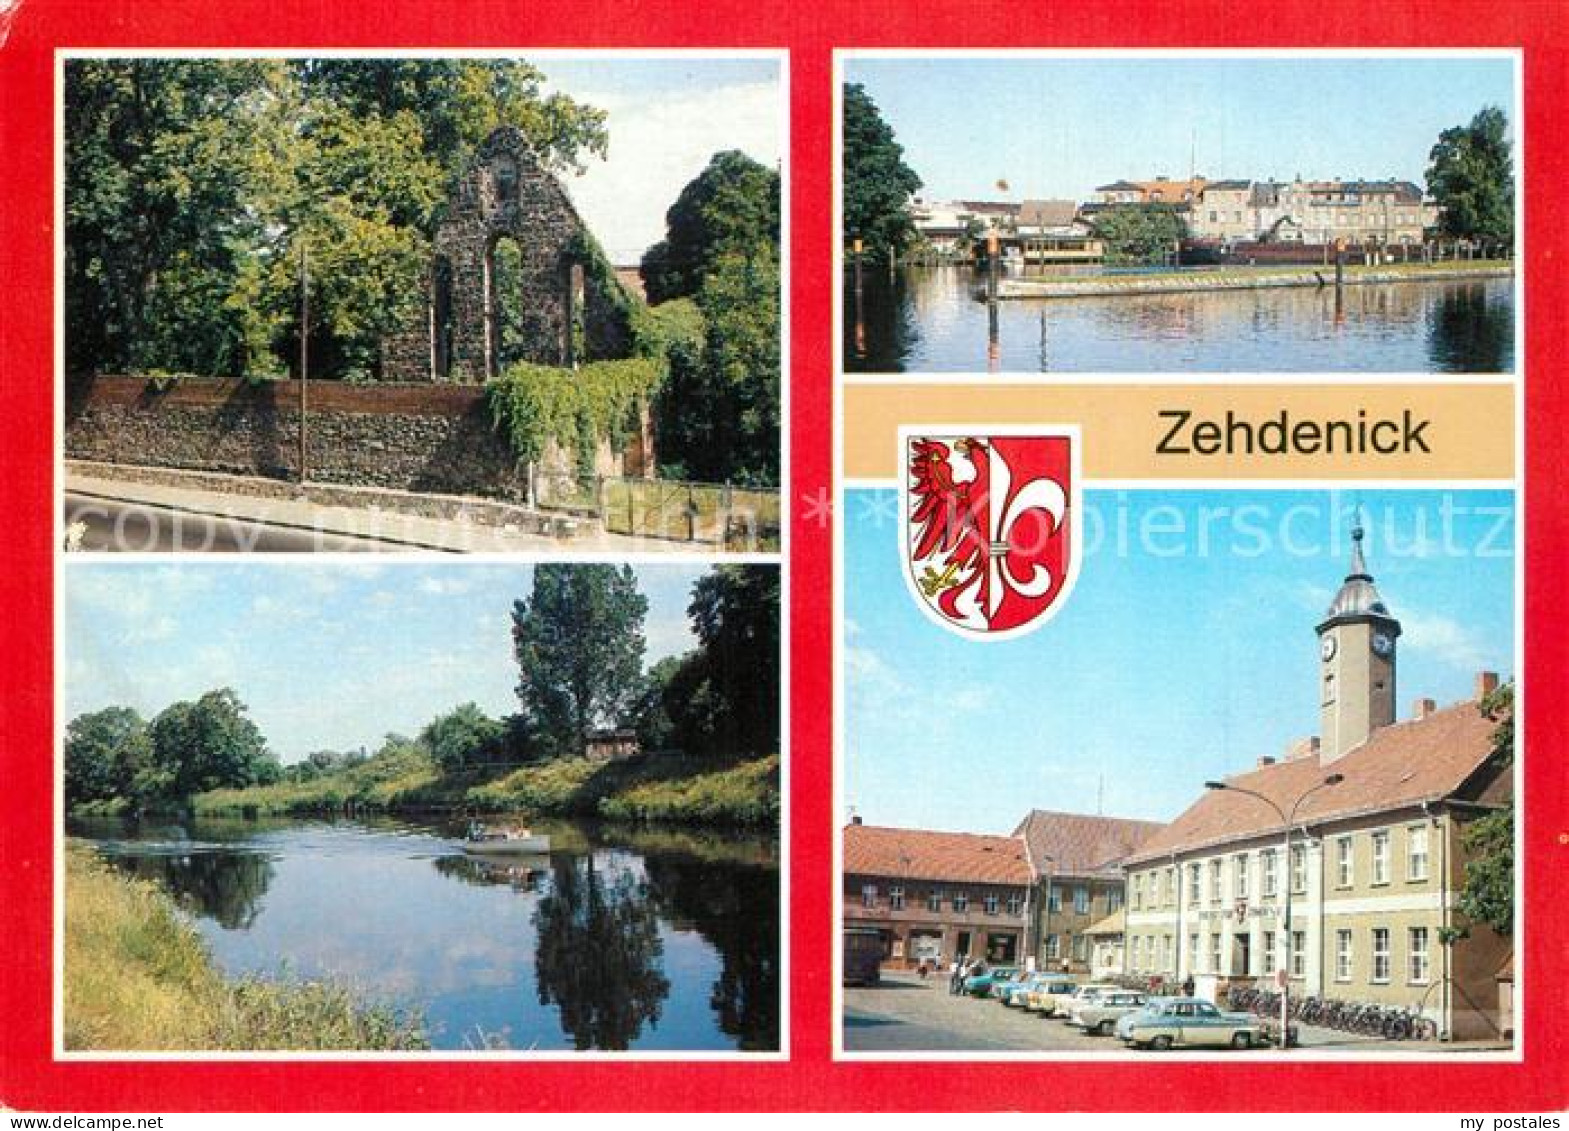 43354436 Zehdenick Klosterruine Ernst Thaelmann Platz Havel Hafen Vosskanal Mark - Zehdenick